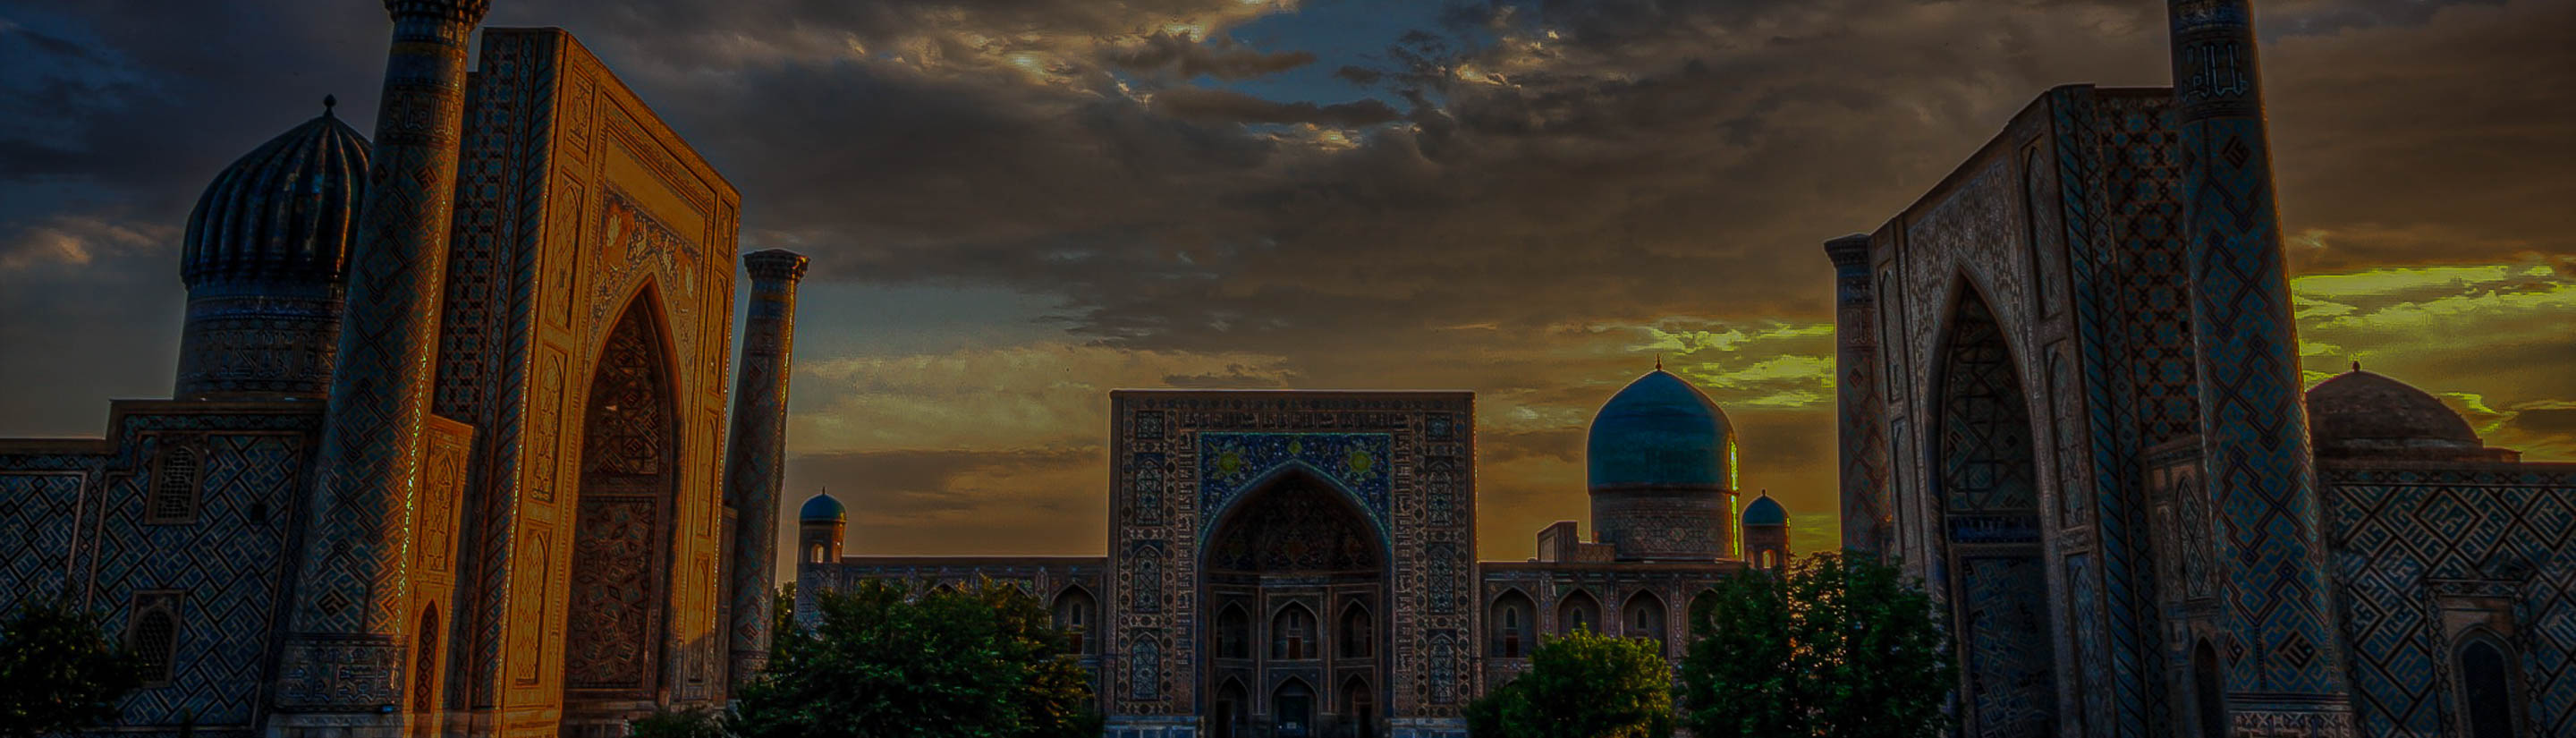 Registan in Samarkand in Usbekistan